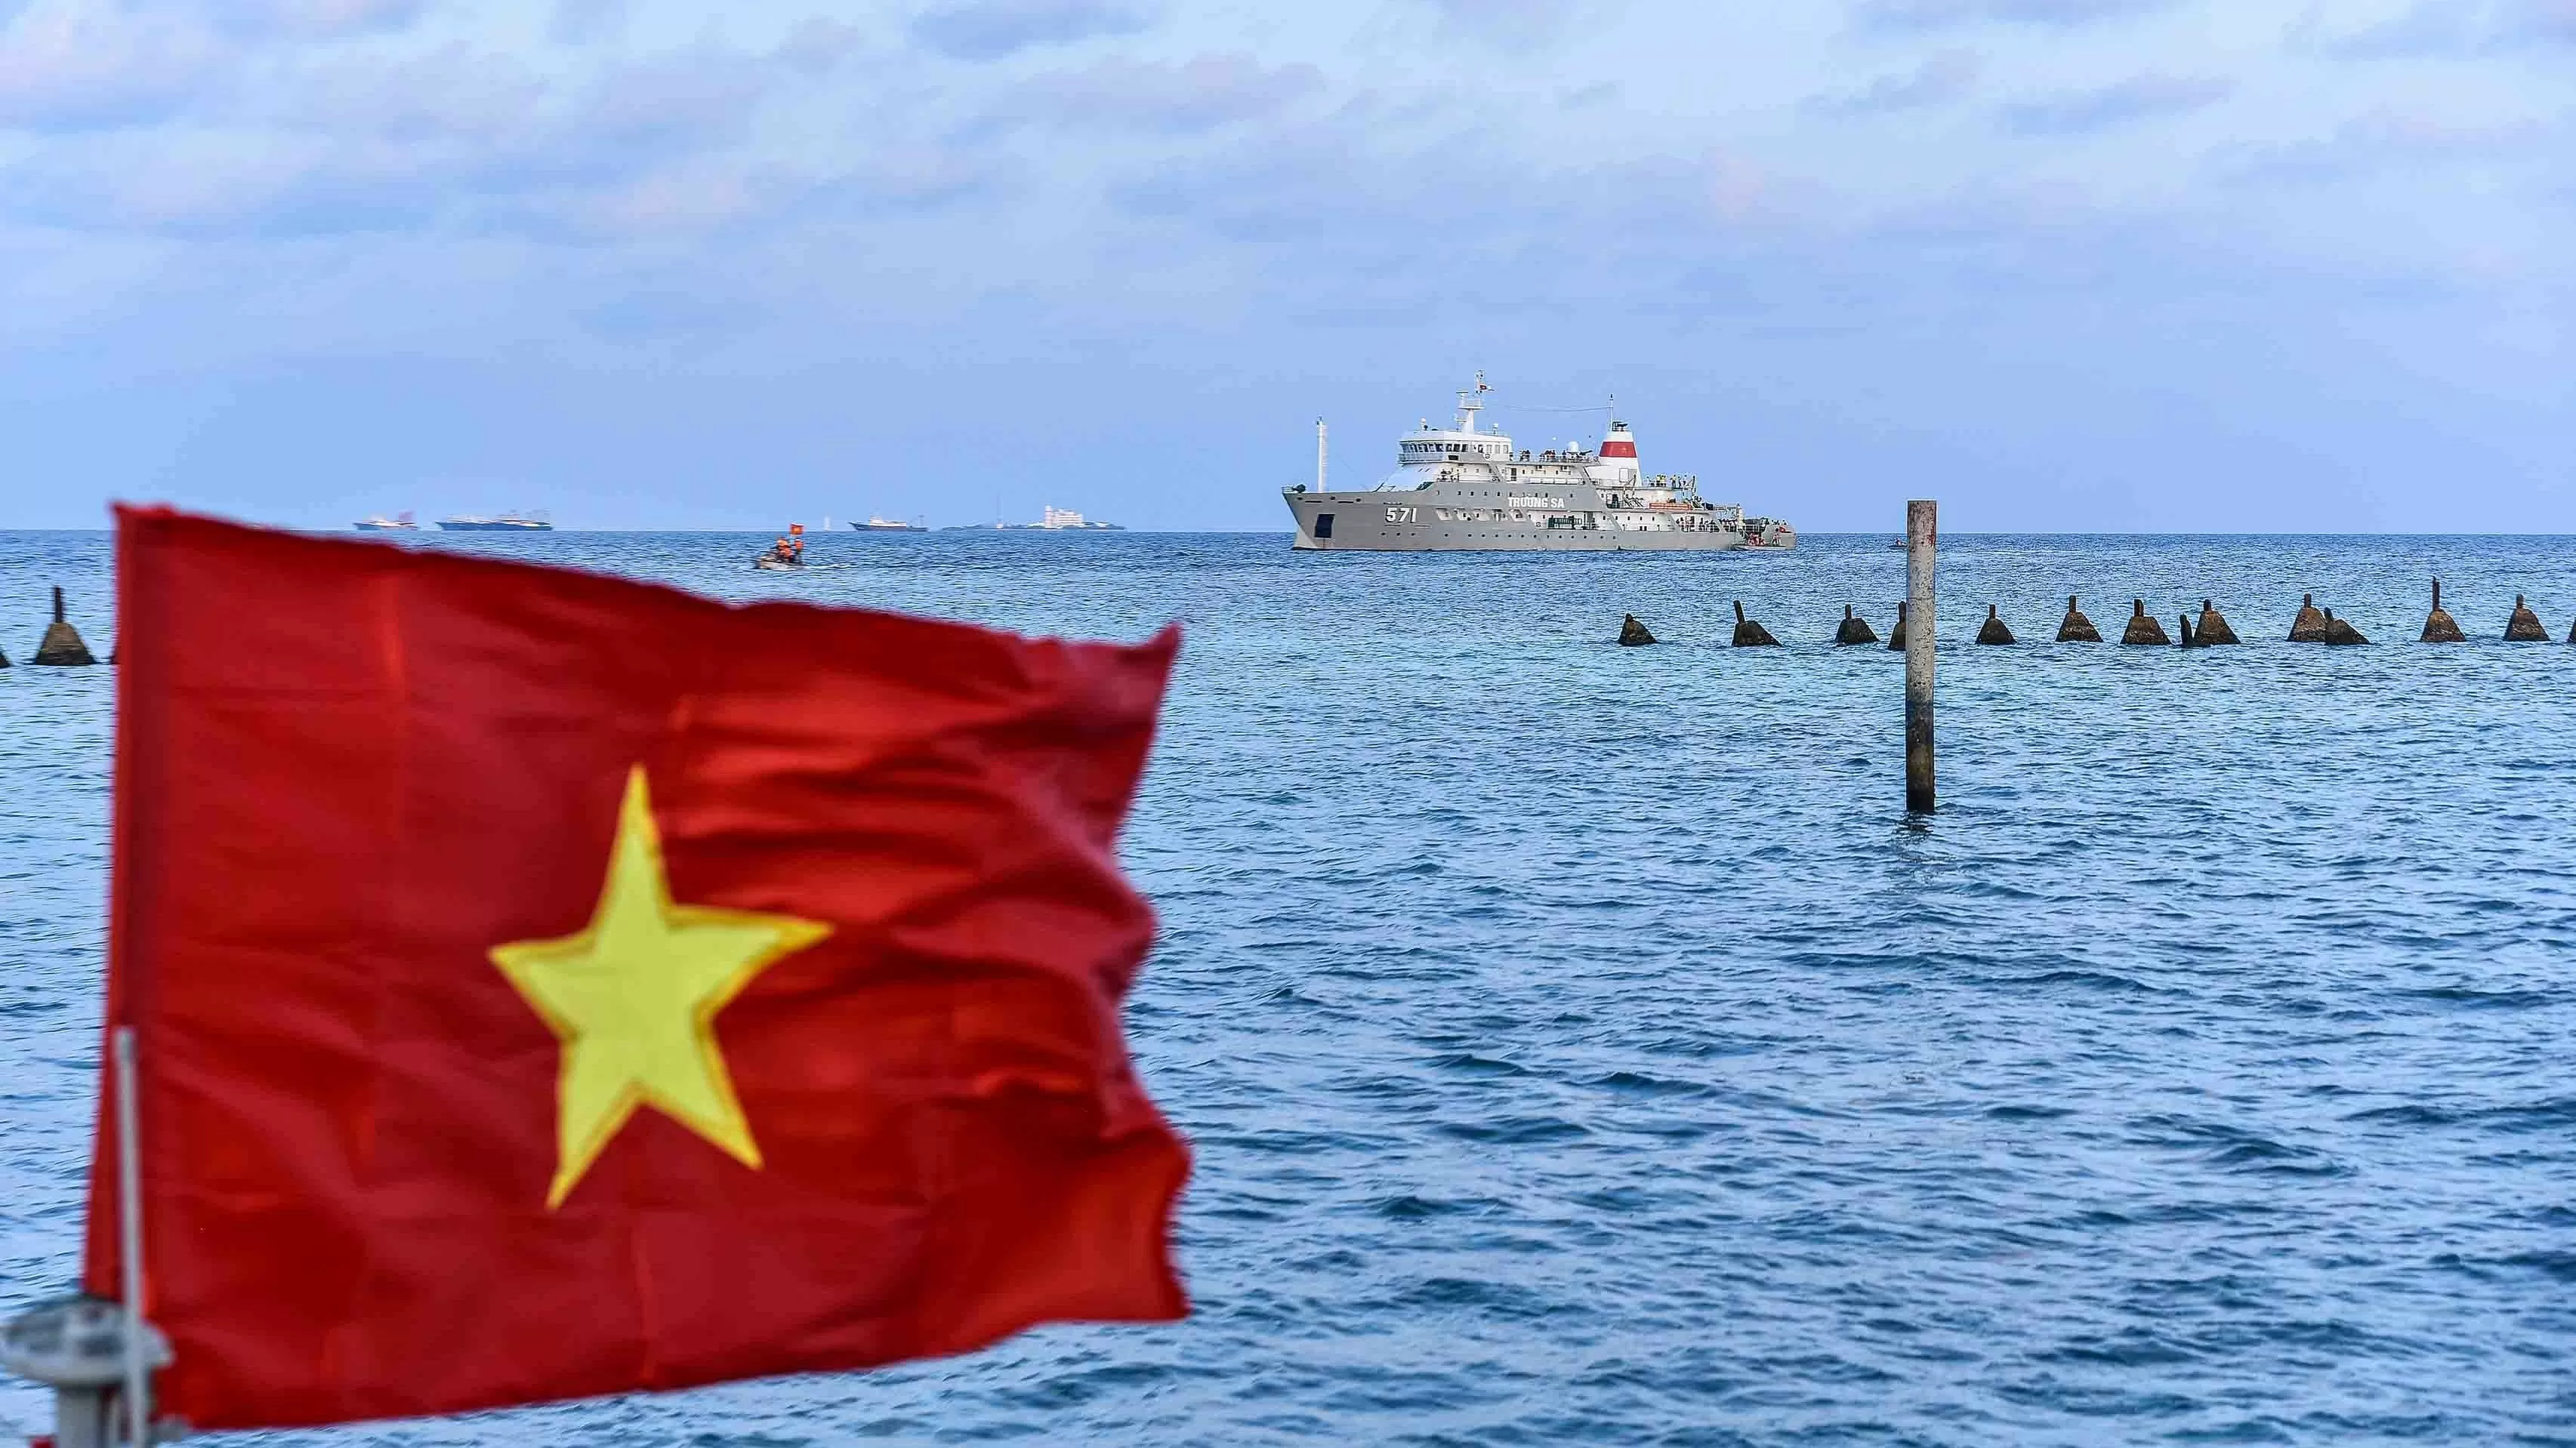 Hội thảo quốc tế thường niên về Biển Đông lần thứ 14: Việt Nam nhấn mạnh việc tuân thủ luật pháp quốc tế, đề cao trách nhiệm của các nước liên quan